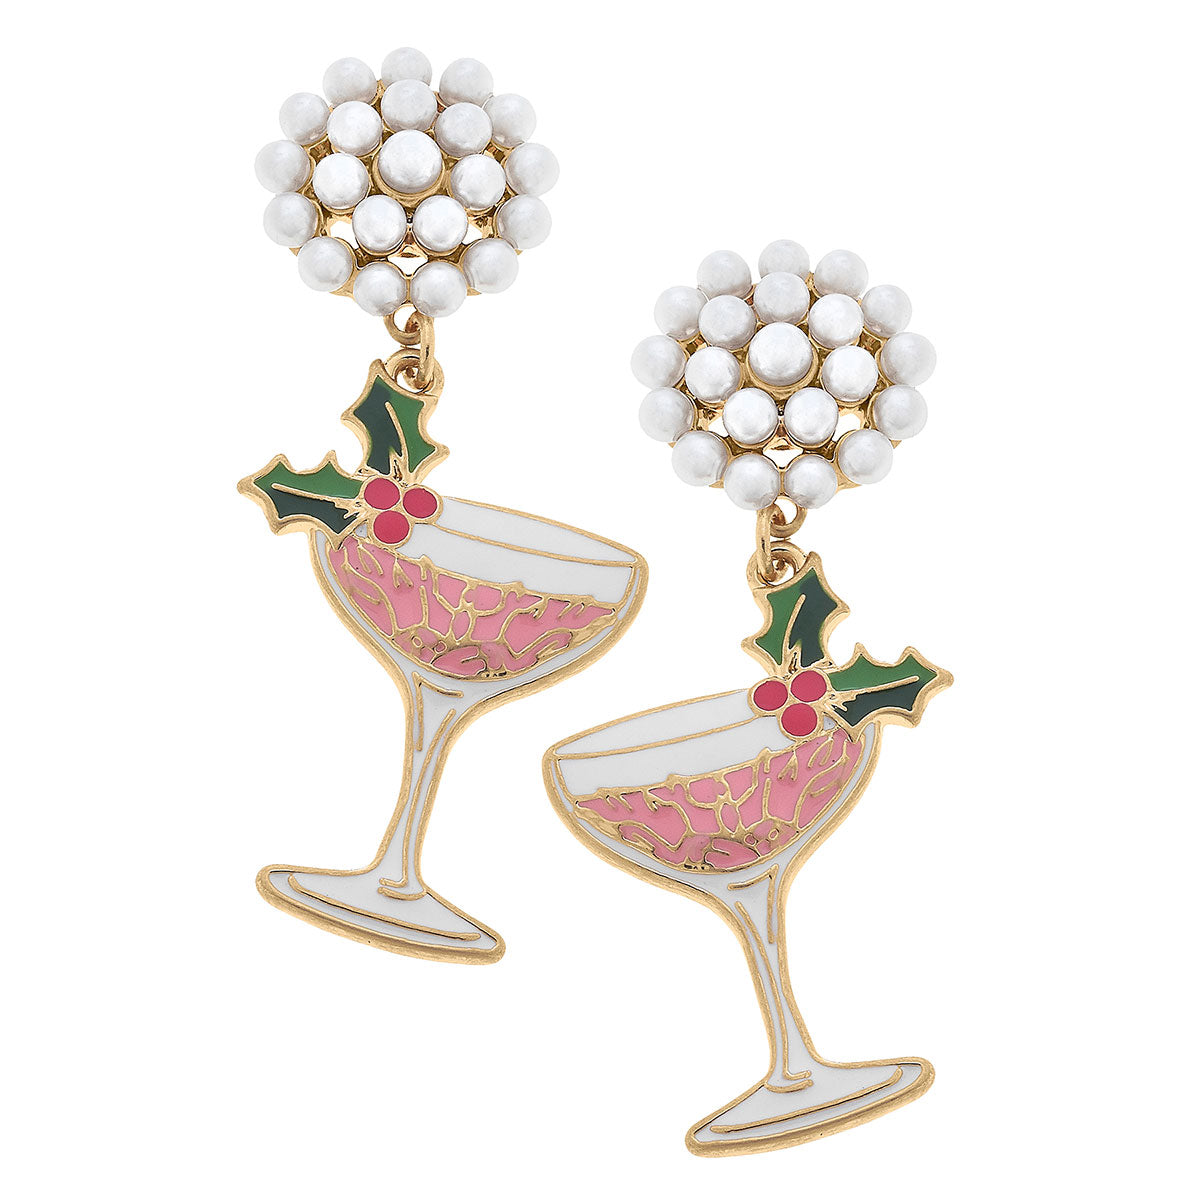 Festive Champagne Coupe Enamel Earrings in Pink & Green